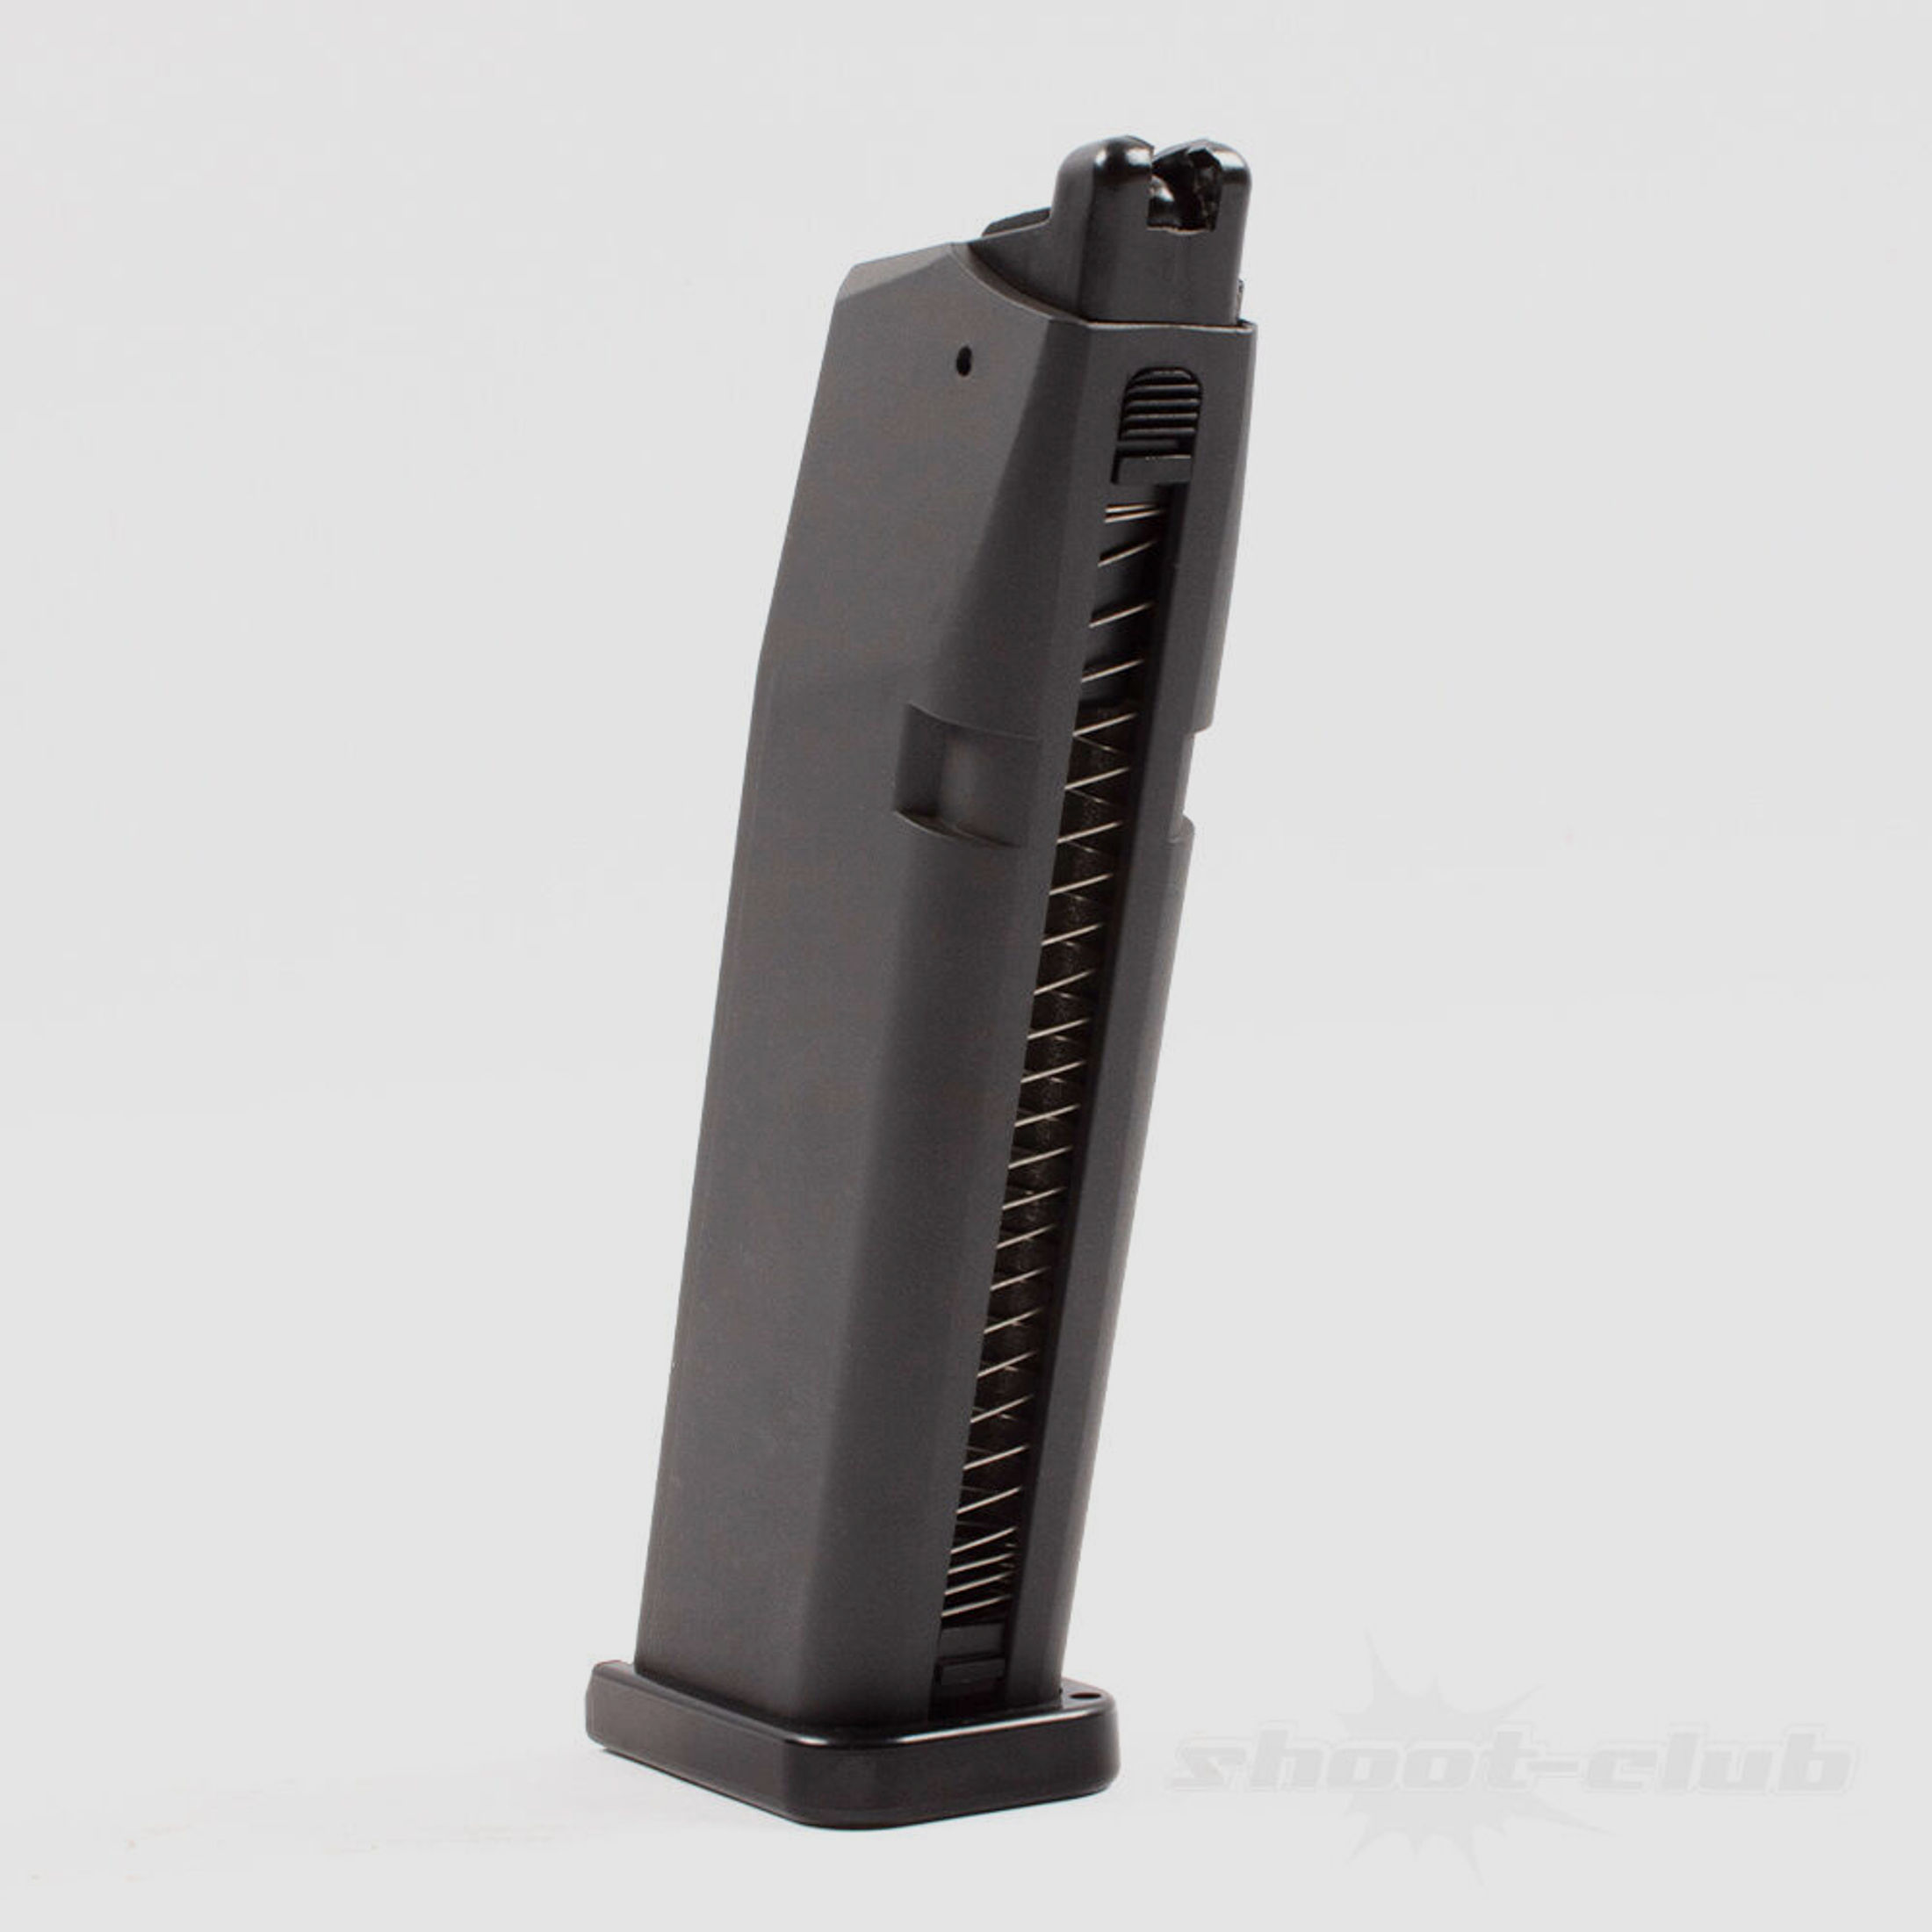 UMAREX	 Magazin für Glock 17 Gen.4 Airsoft Co2- Pistole Kal. 6mm